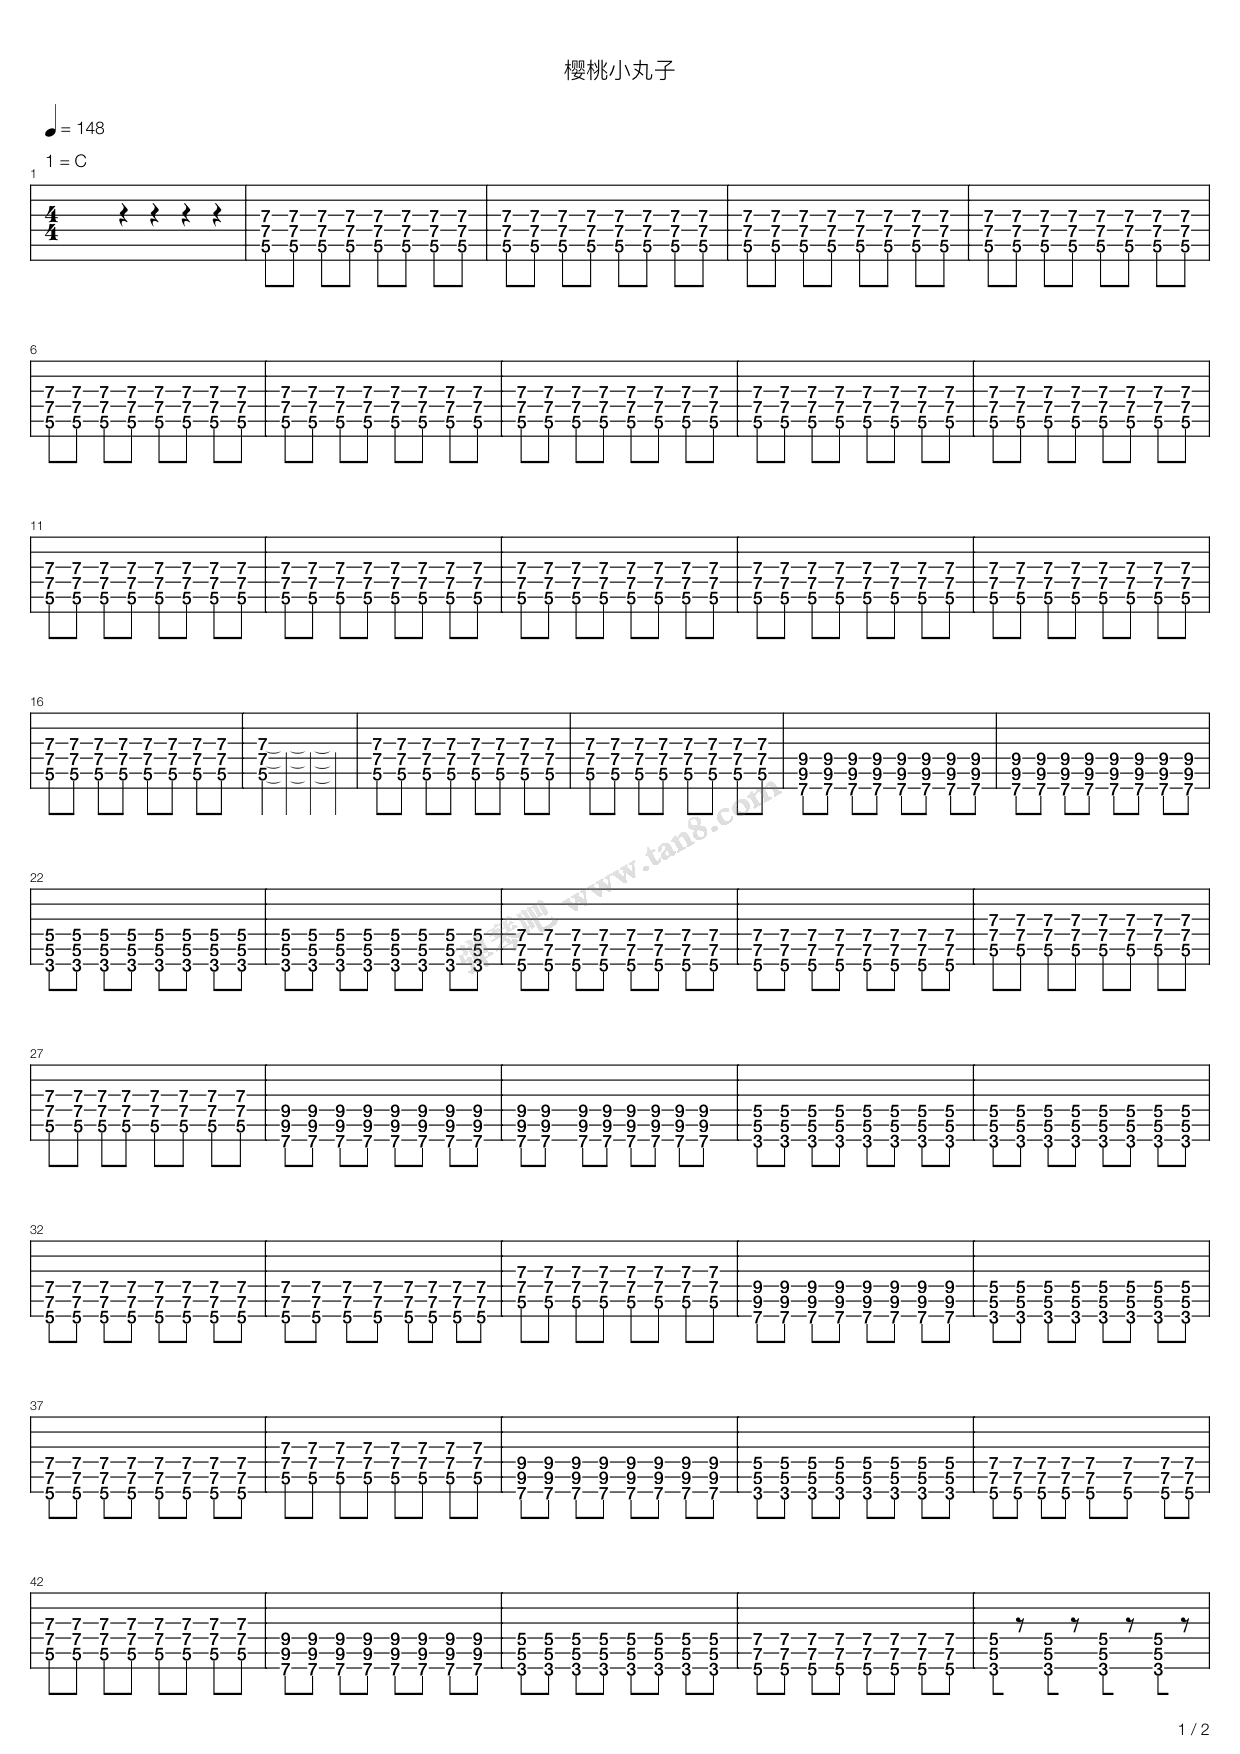 大家来跳舞（伴奏）-《樱桃小丸子》片尾曲-钢琴谱文件（五线谱、双手简谱、数字谱、Midi、PDF）免费下载